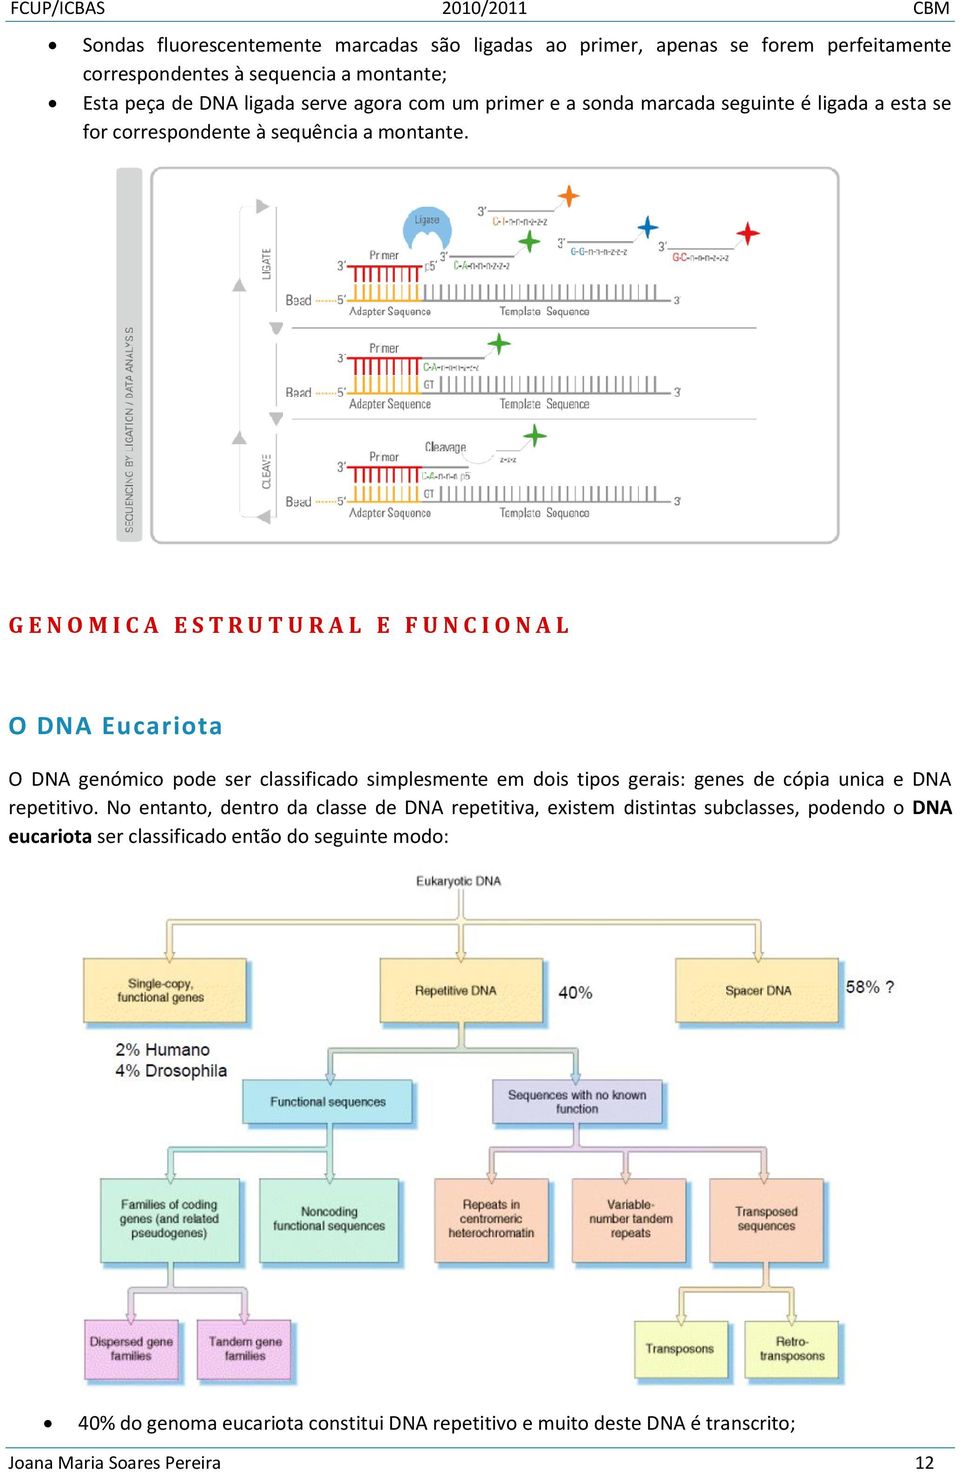 G E N O M I C A E S T R U T U R A L E F U N C I O N A L O DNA Eucariota O DNA genómico pode ser classificado simplesmente em dois tipos gerais: genes de cópia unica e DNA